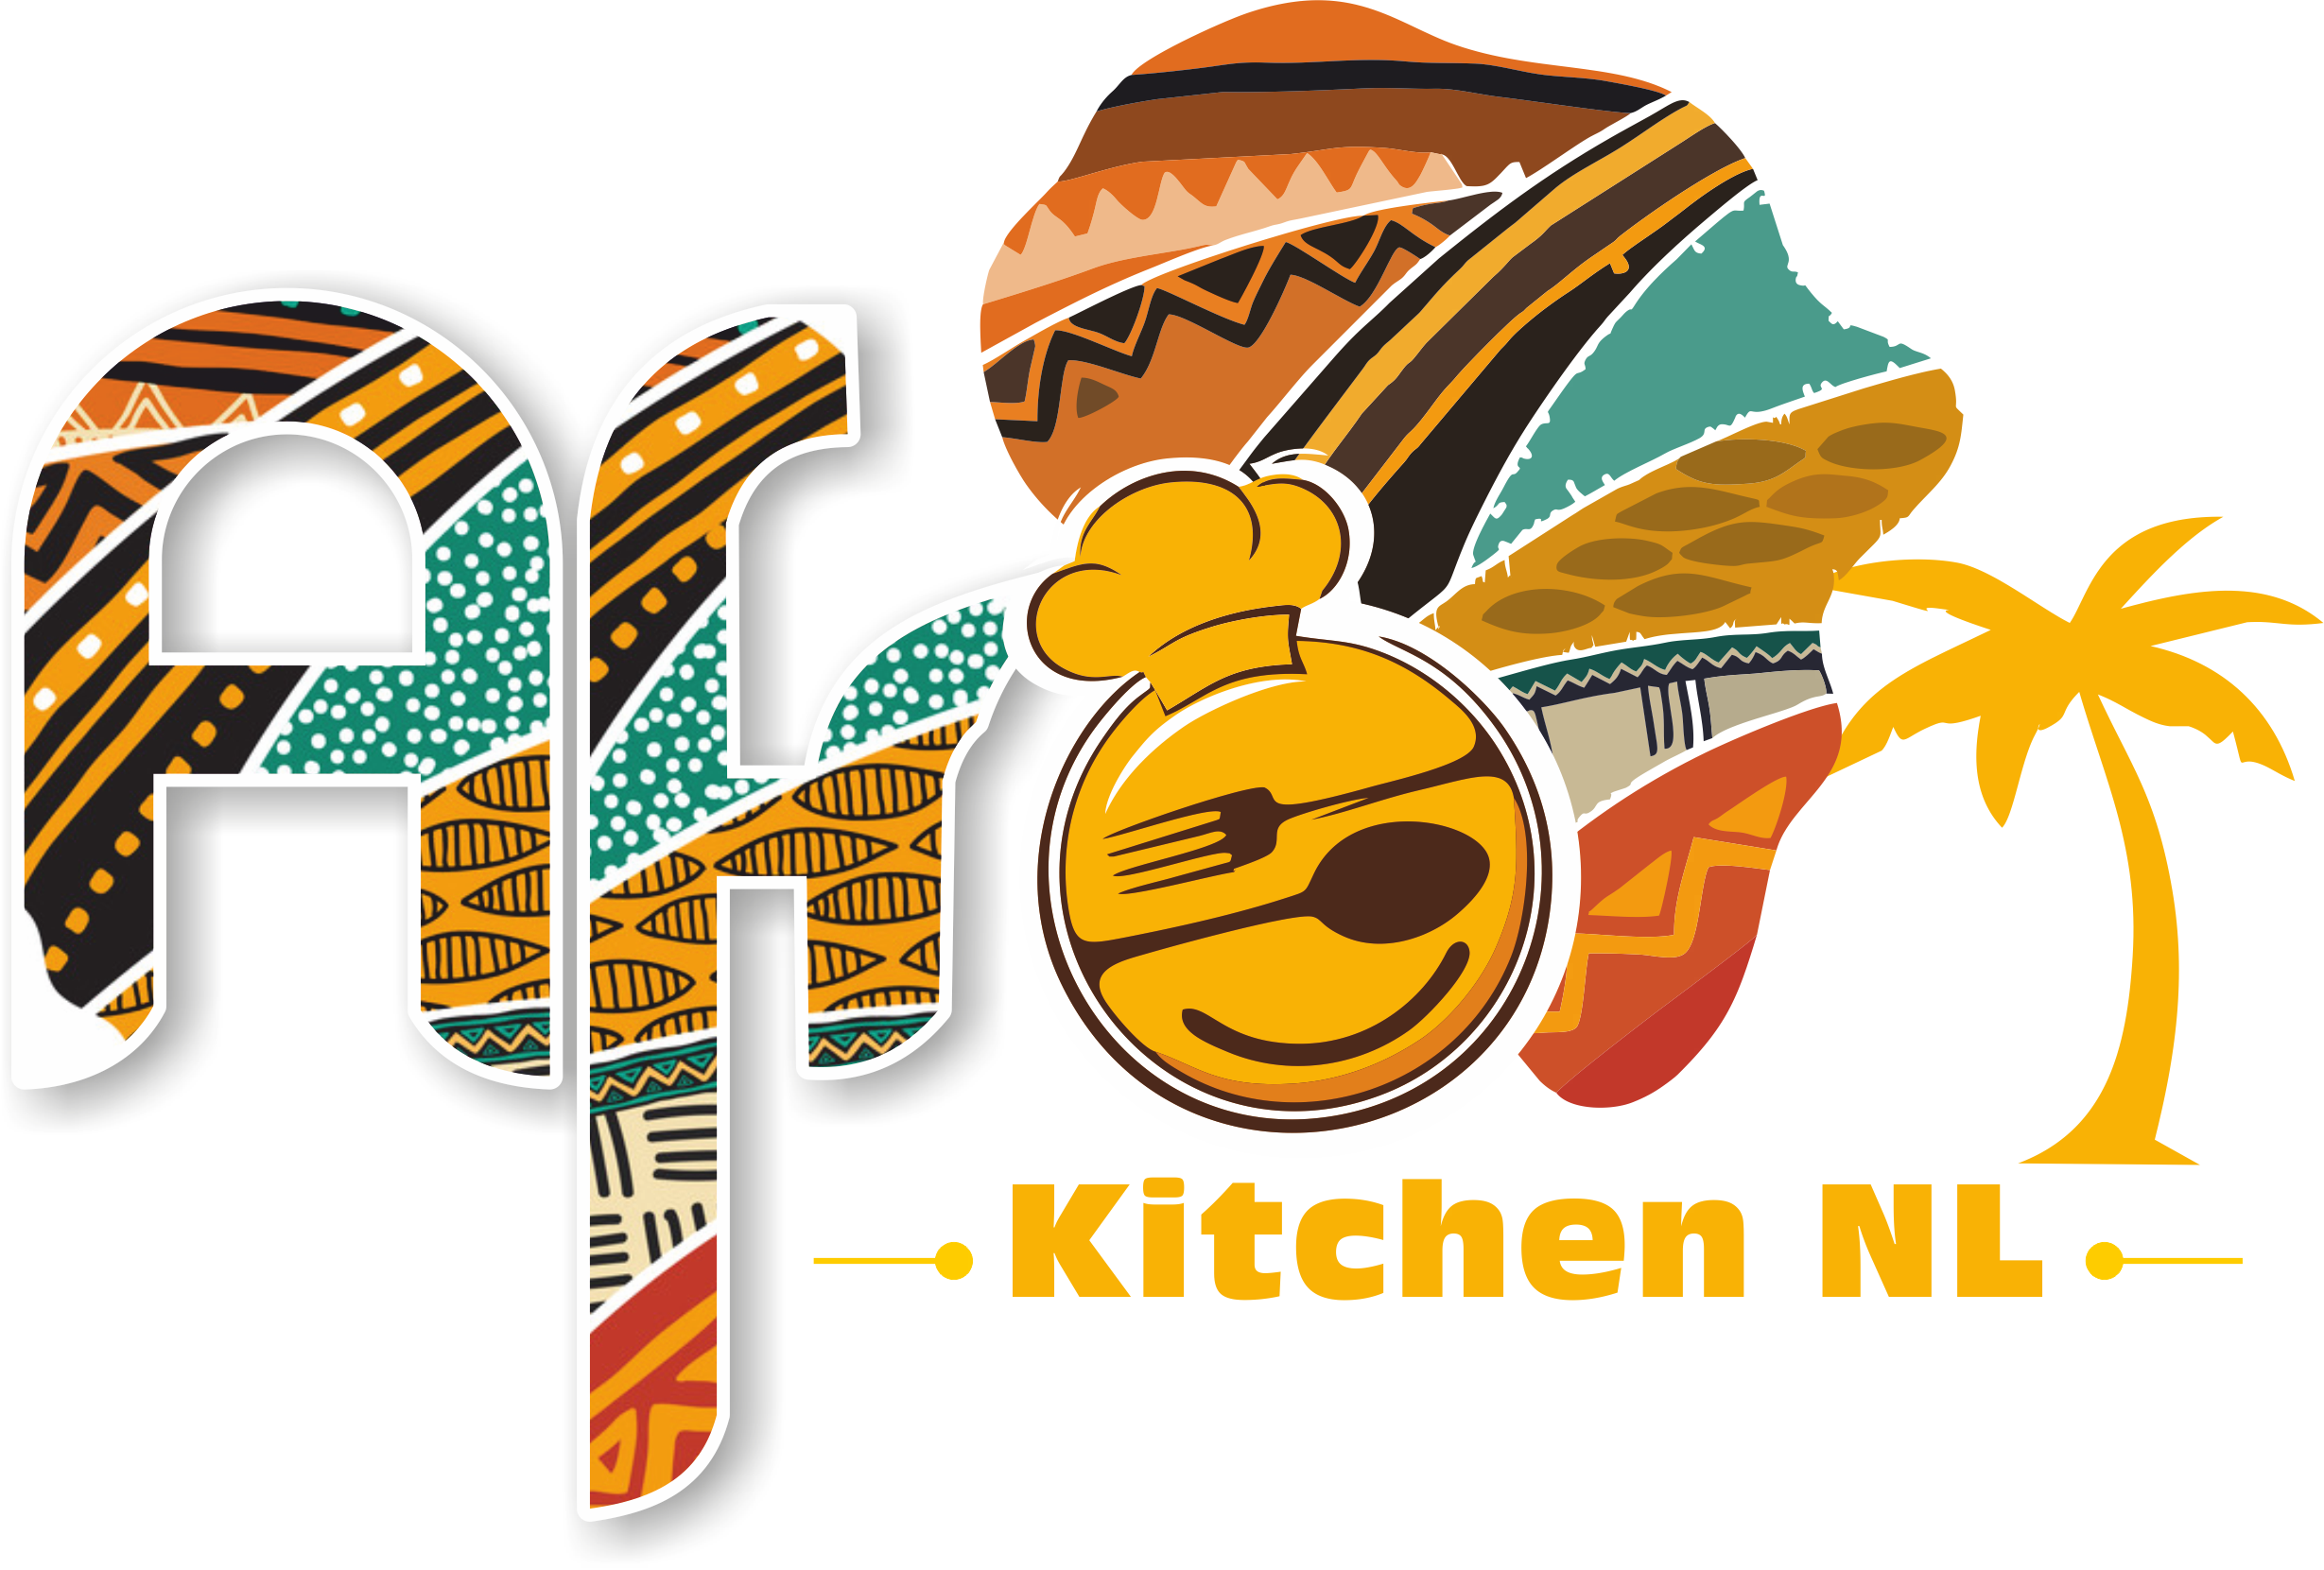 Afro Kitchen NL